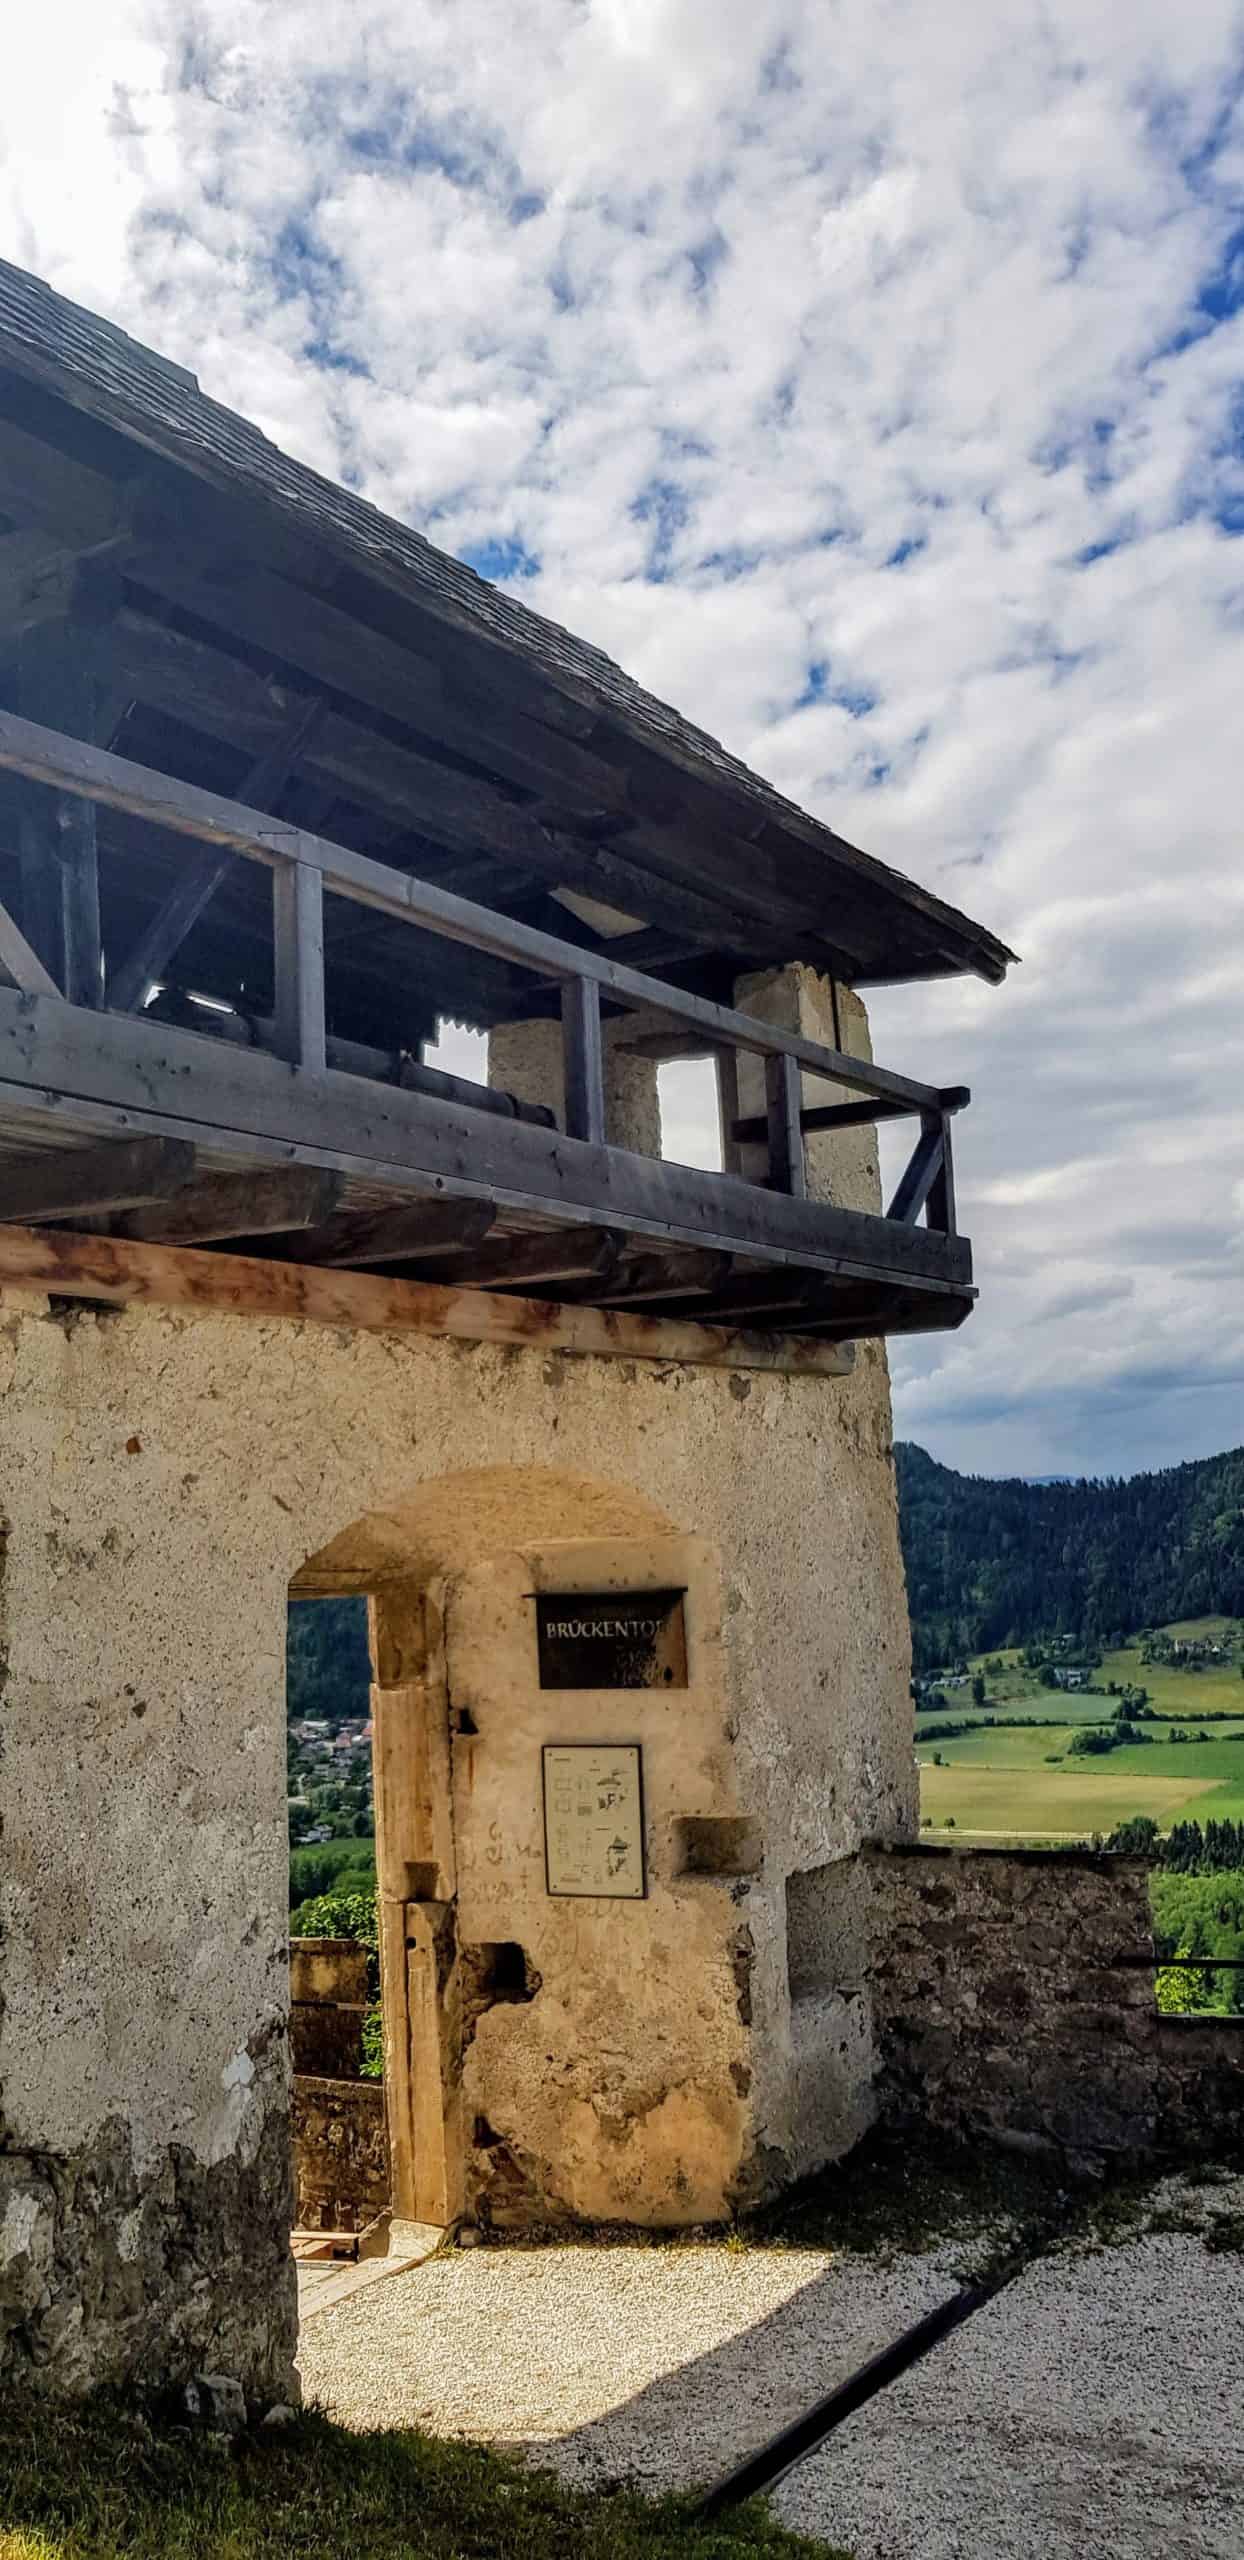 Historisches Brückentor zur Verteidigung von Feinden im Mittelalter - Sehenswürdigkeit in Österreich, Kärnten